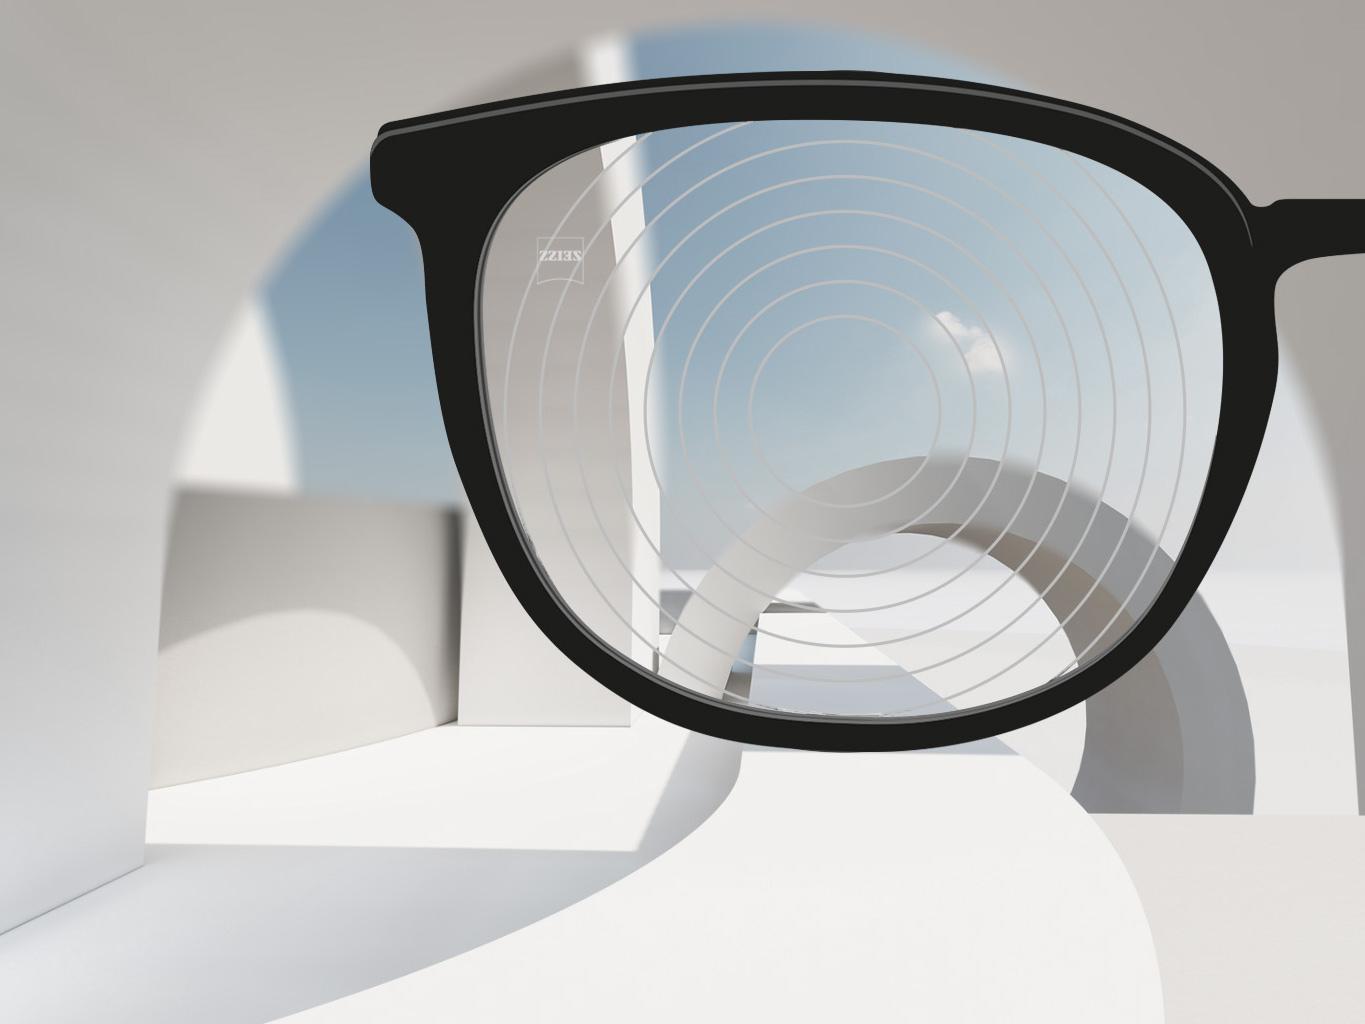 Przybliżony obraz soczewek ZEISS zwalczających krótkowzroczność z czarnymi oprawkami okularowymi i okręgami koncentrycznymi na powierzchni soczewki. 